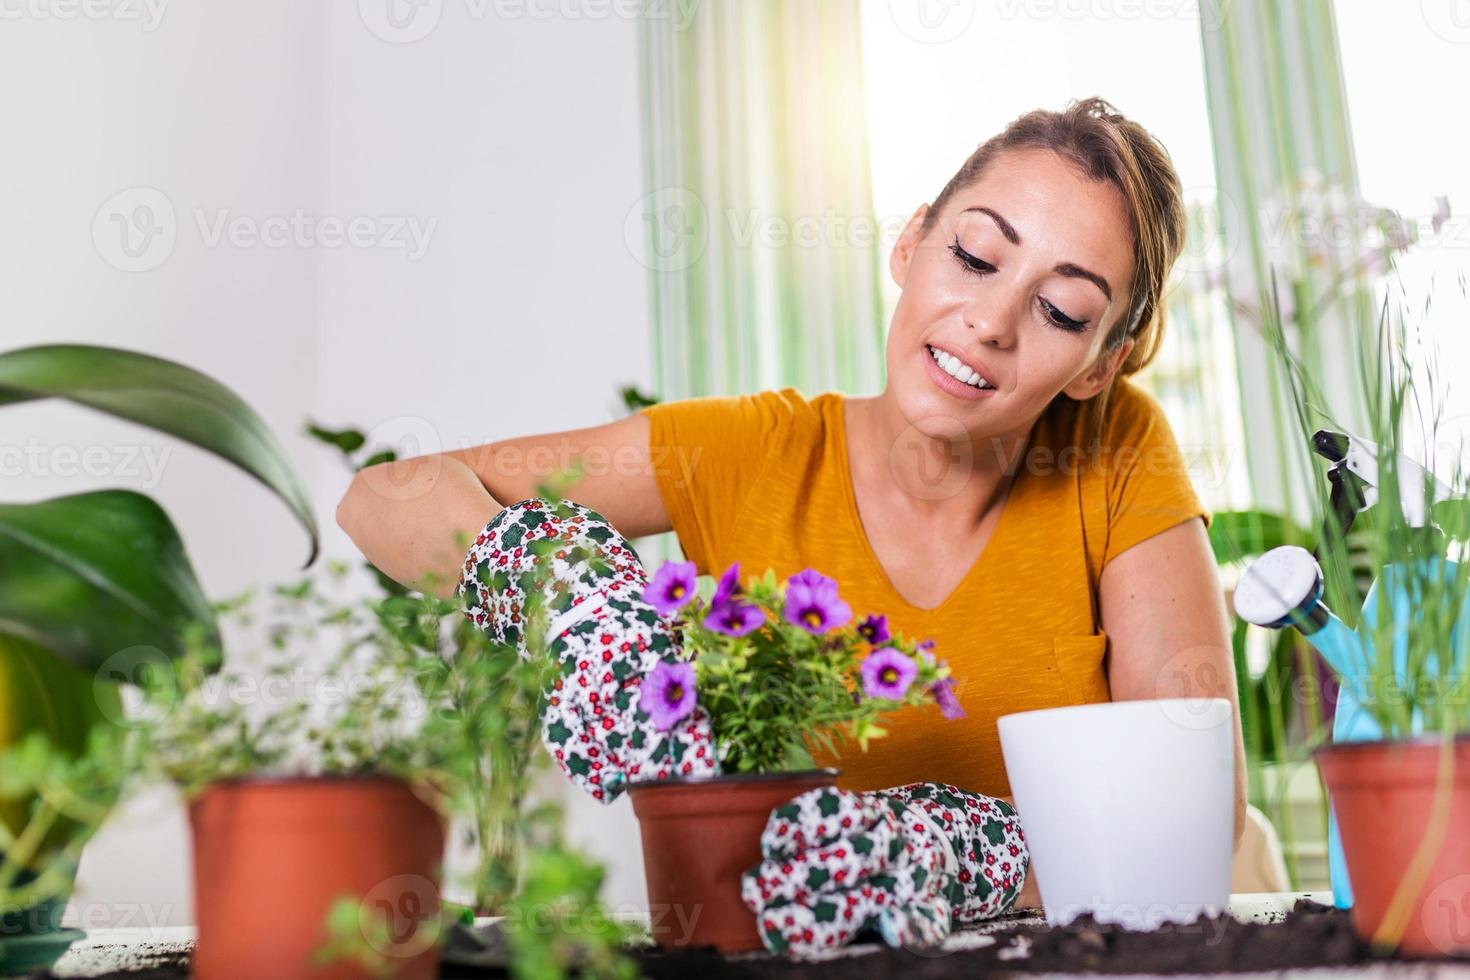 mujer preparando flores para plantar. jardinero plantando flores en maceta. mujer joven preparando flores para plantar durante el trabajo de jardinería. personas, jardinería, plantación de flores y concepto de profesión. foto